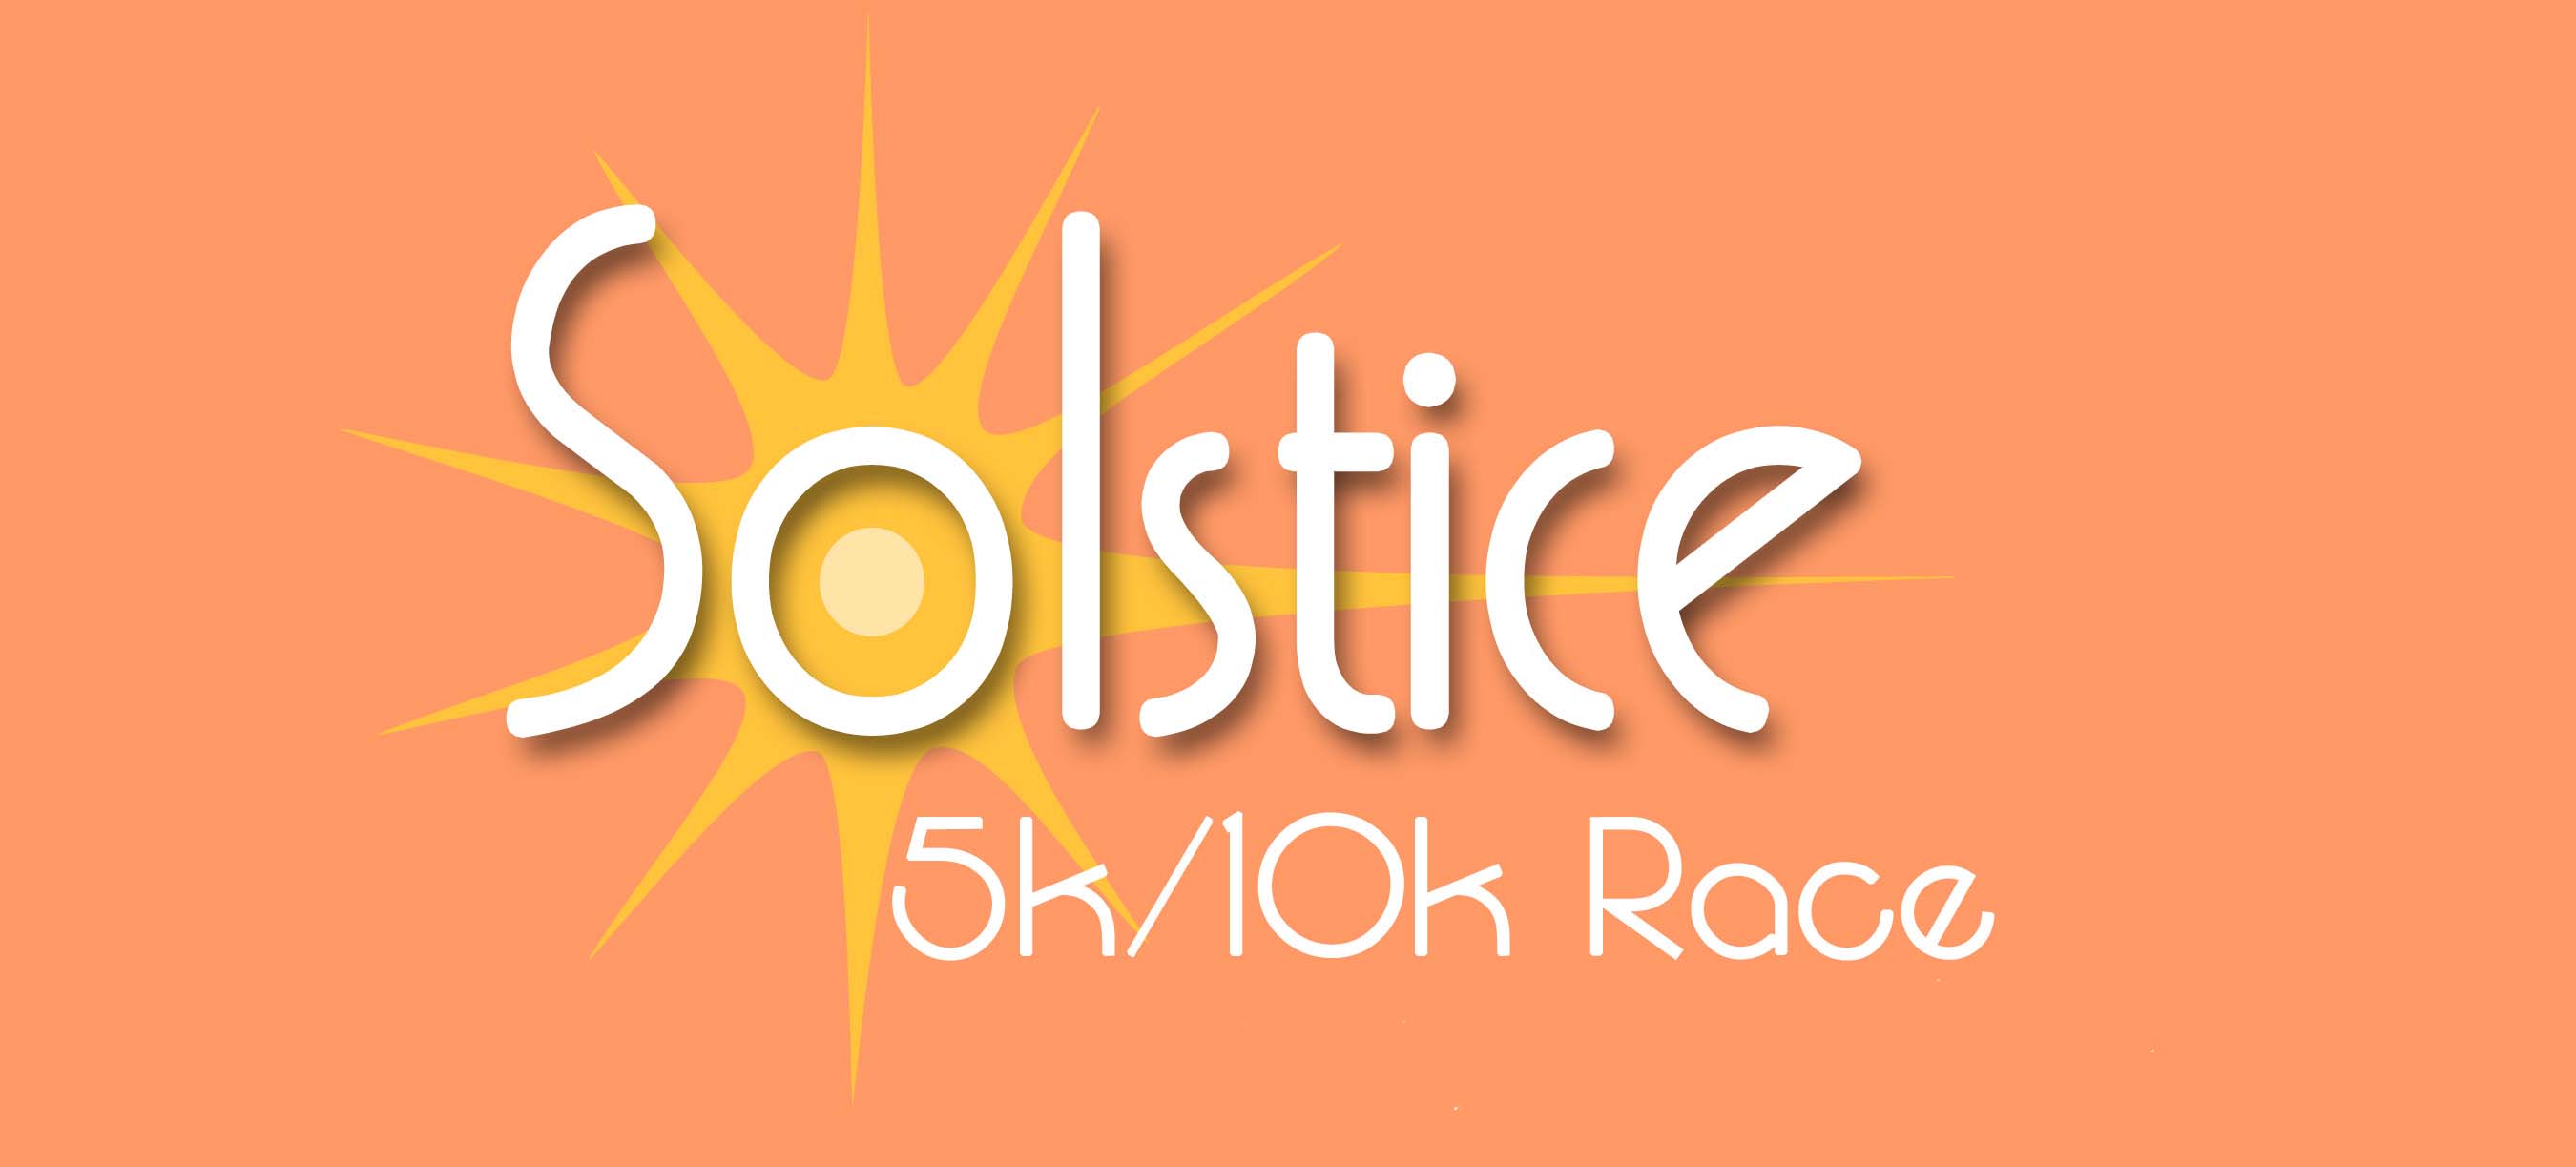 Register for 2016 Solstice 1 Mile